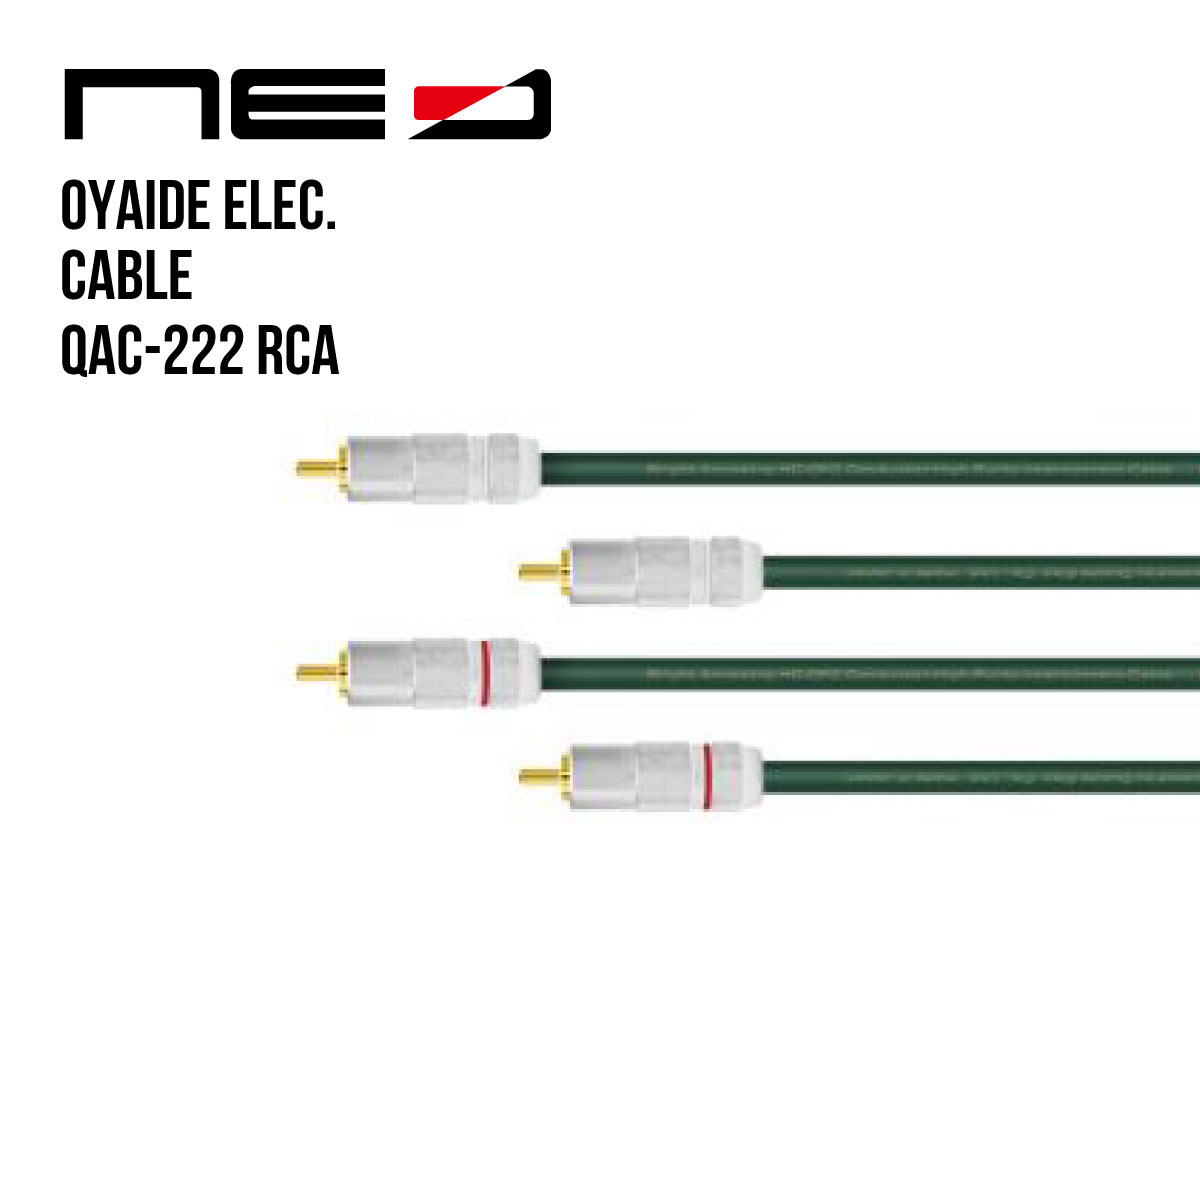 オヤイデ電気 NEOケーブル QAC-222 RCA/2.0 (RCA-RCA 2m)[OYAIDE][Line Cable]